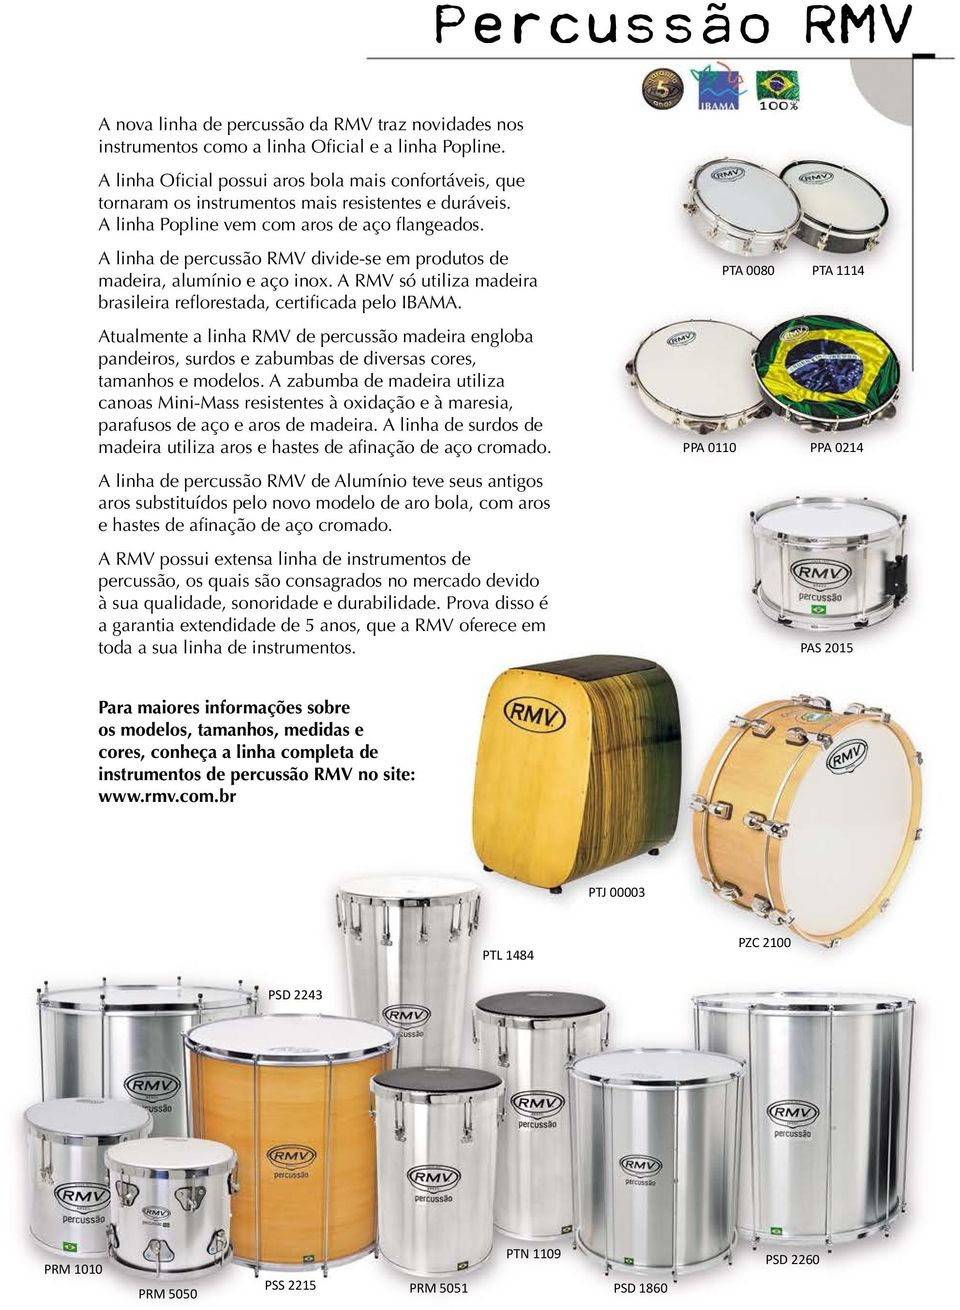 A linha de percussão RMV divide-se em produtos de madeira, alumínio e aço inox. A RMV só utiliza madeira brasileira reflorestada, certificada pelo IBAMA.